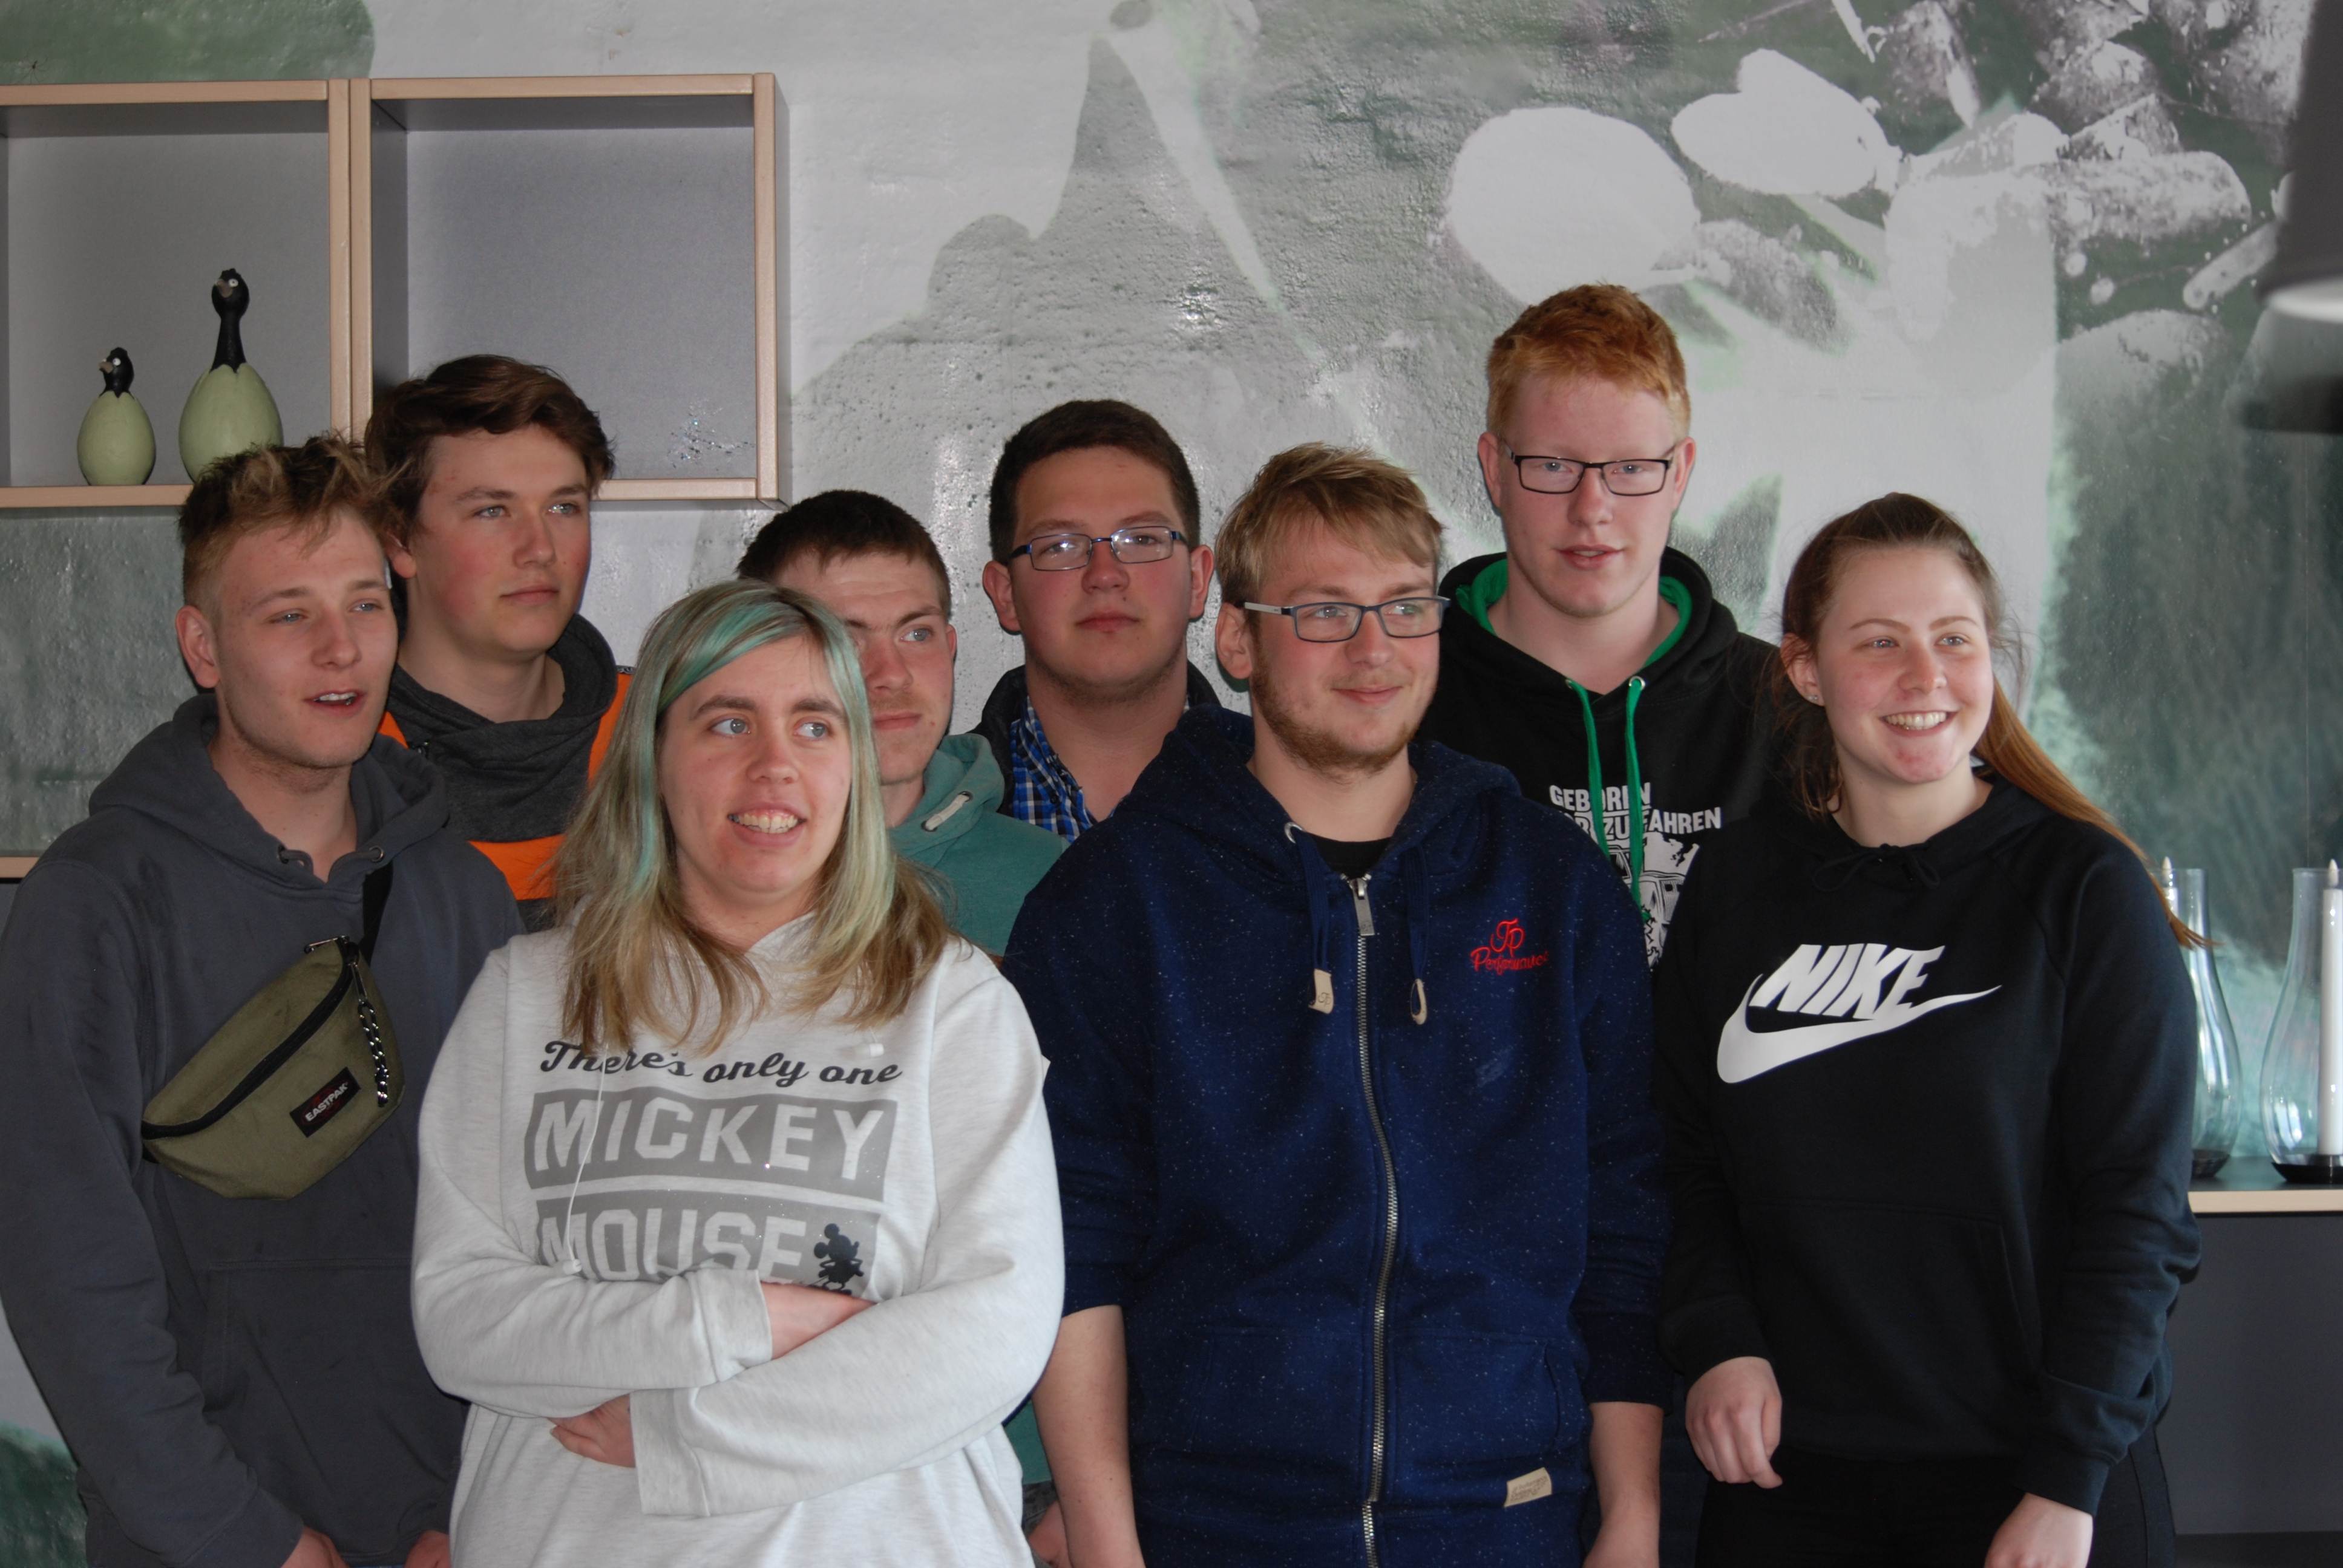 ERASMUS + Jugendaufbauwerk Dithmarschen goes Denmark